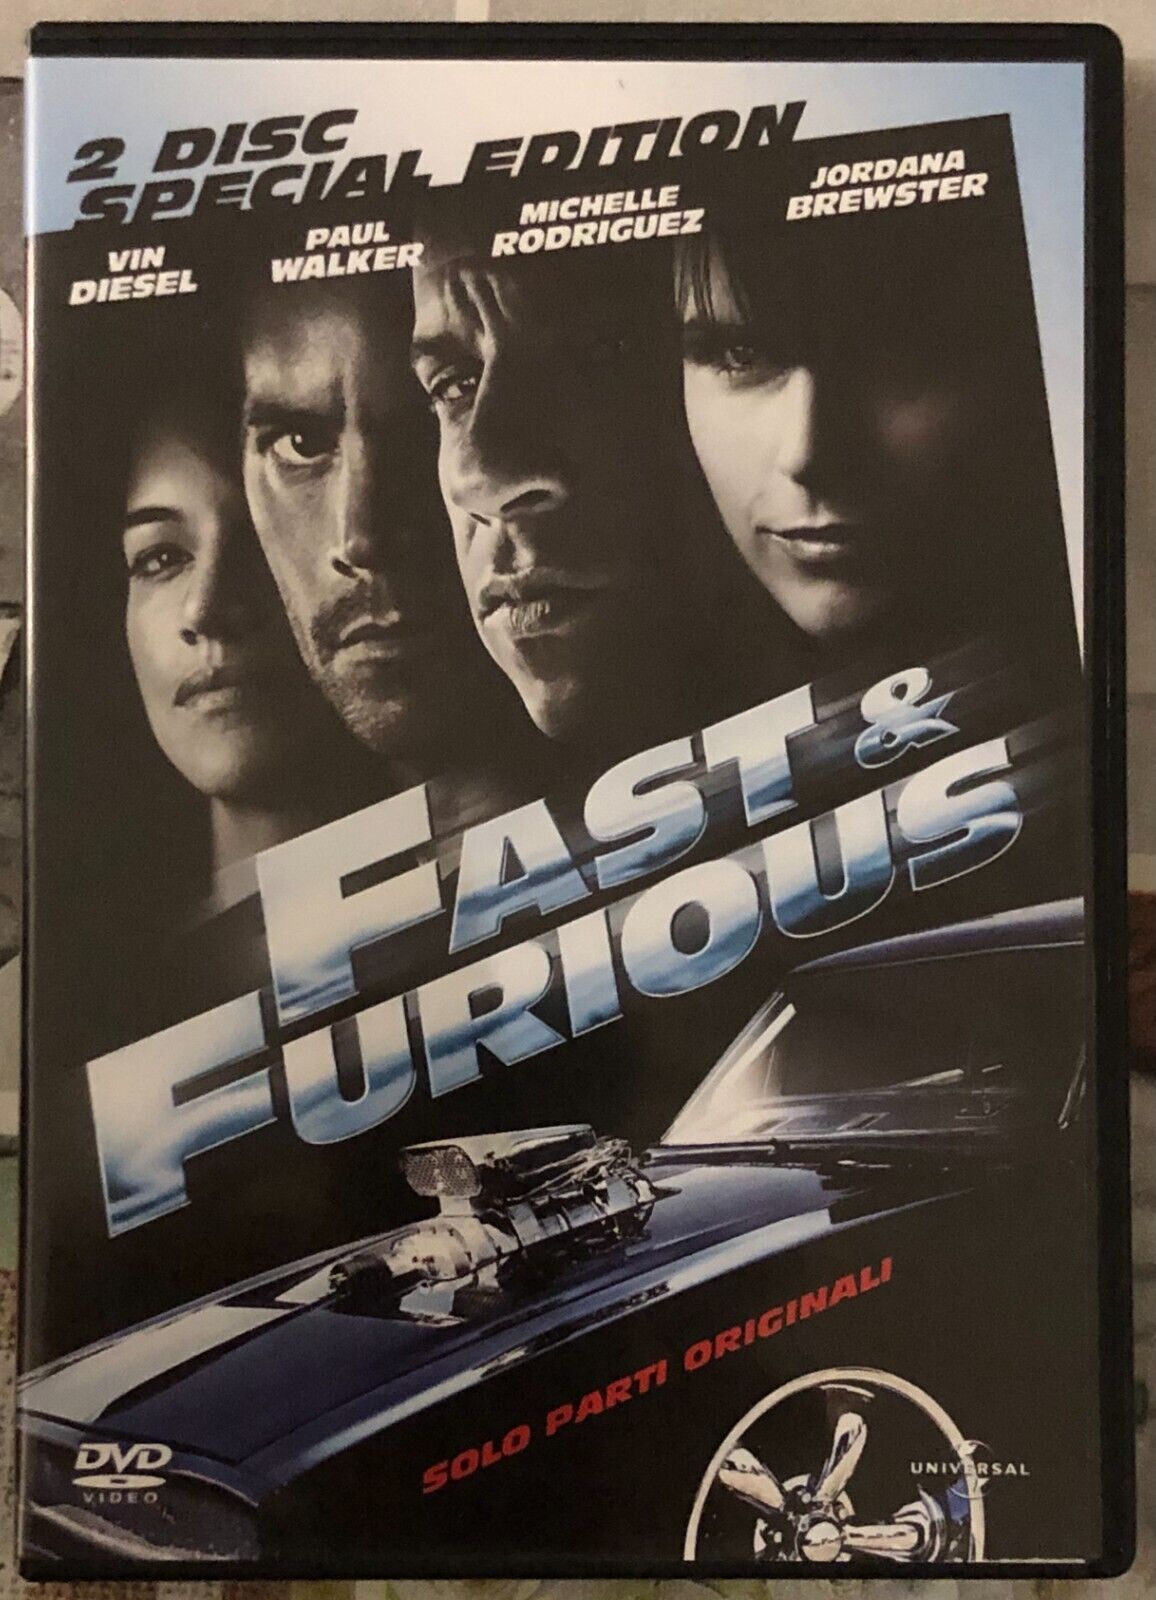 Fast & Furious - Solo parti originali 2 Disc Special edition DVD di Justin Lin,